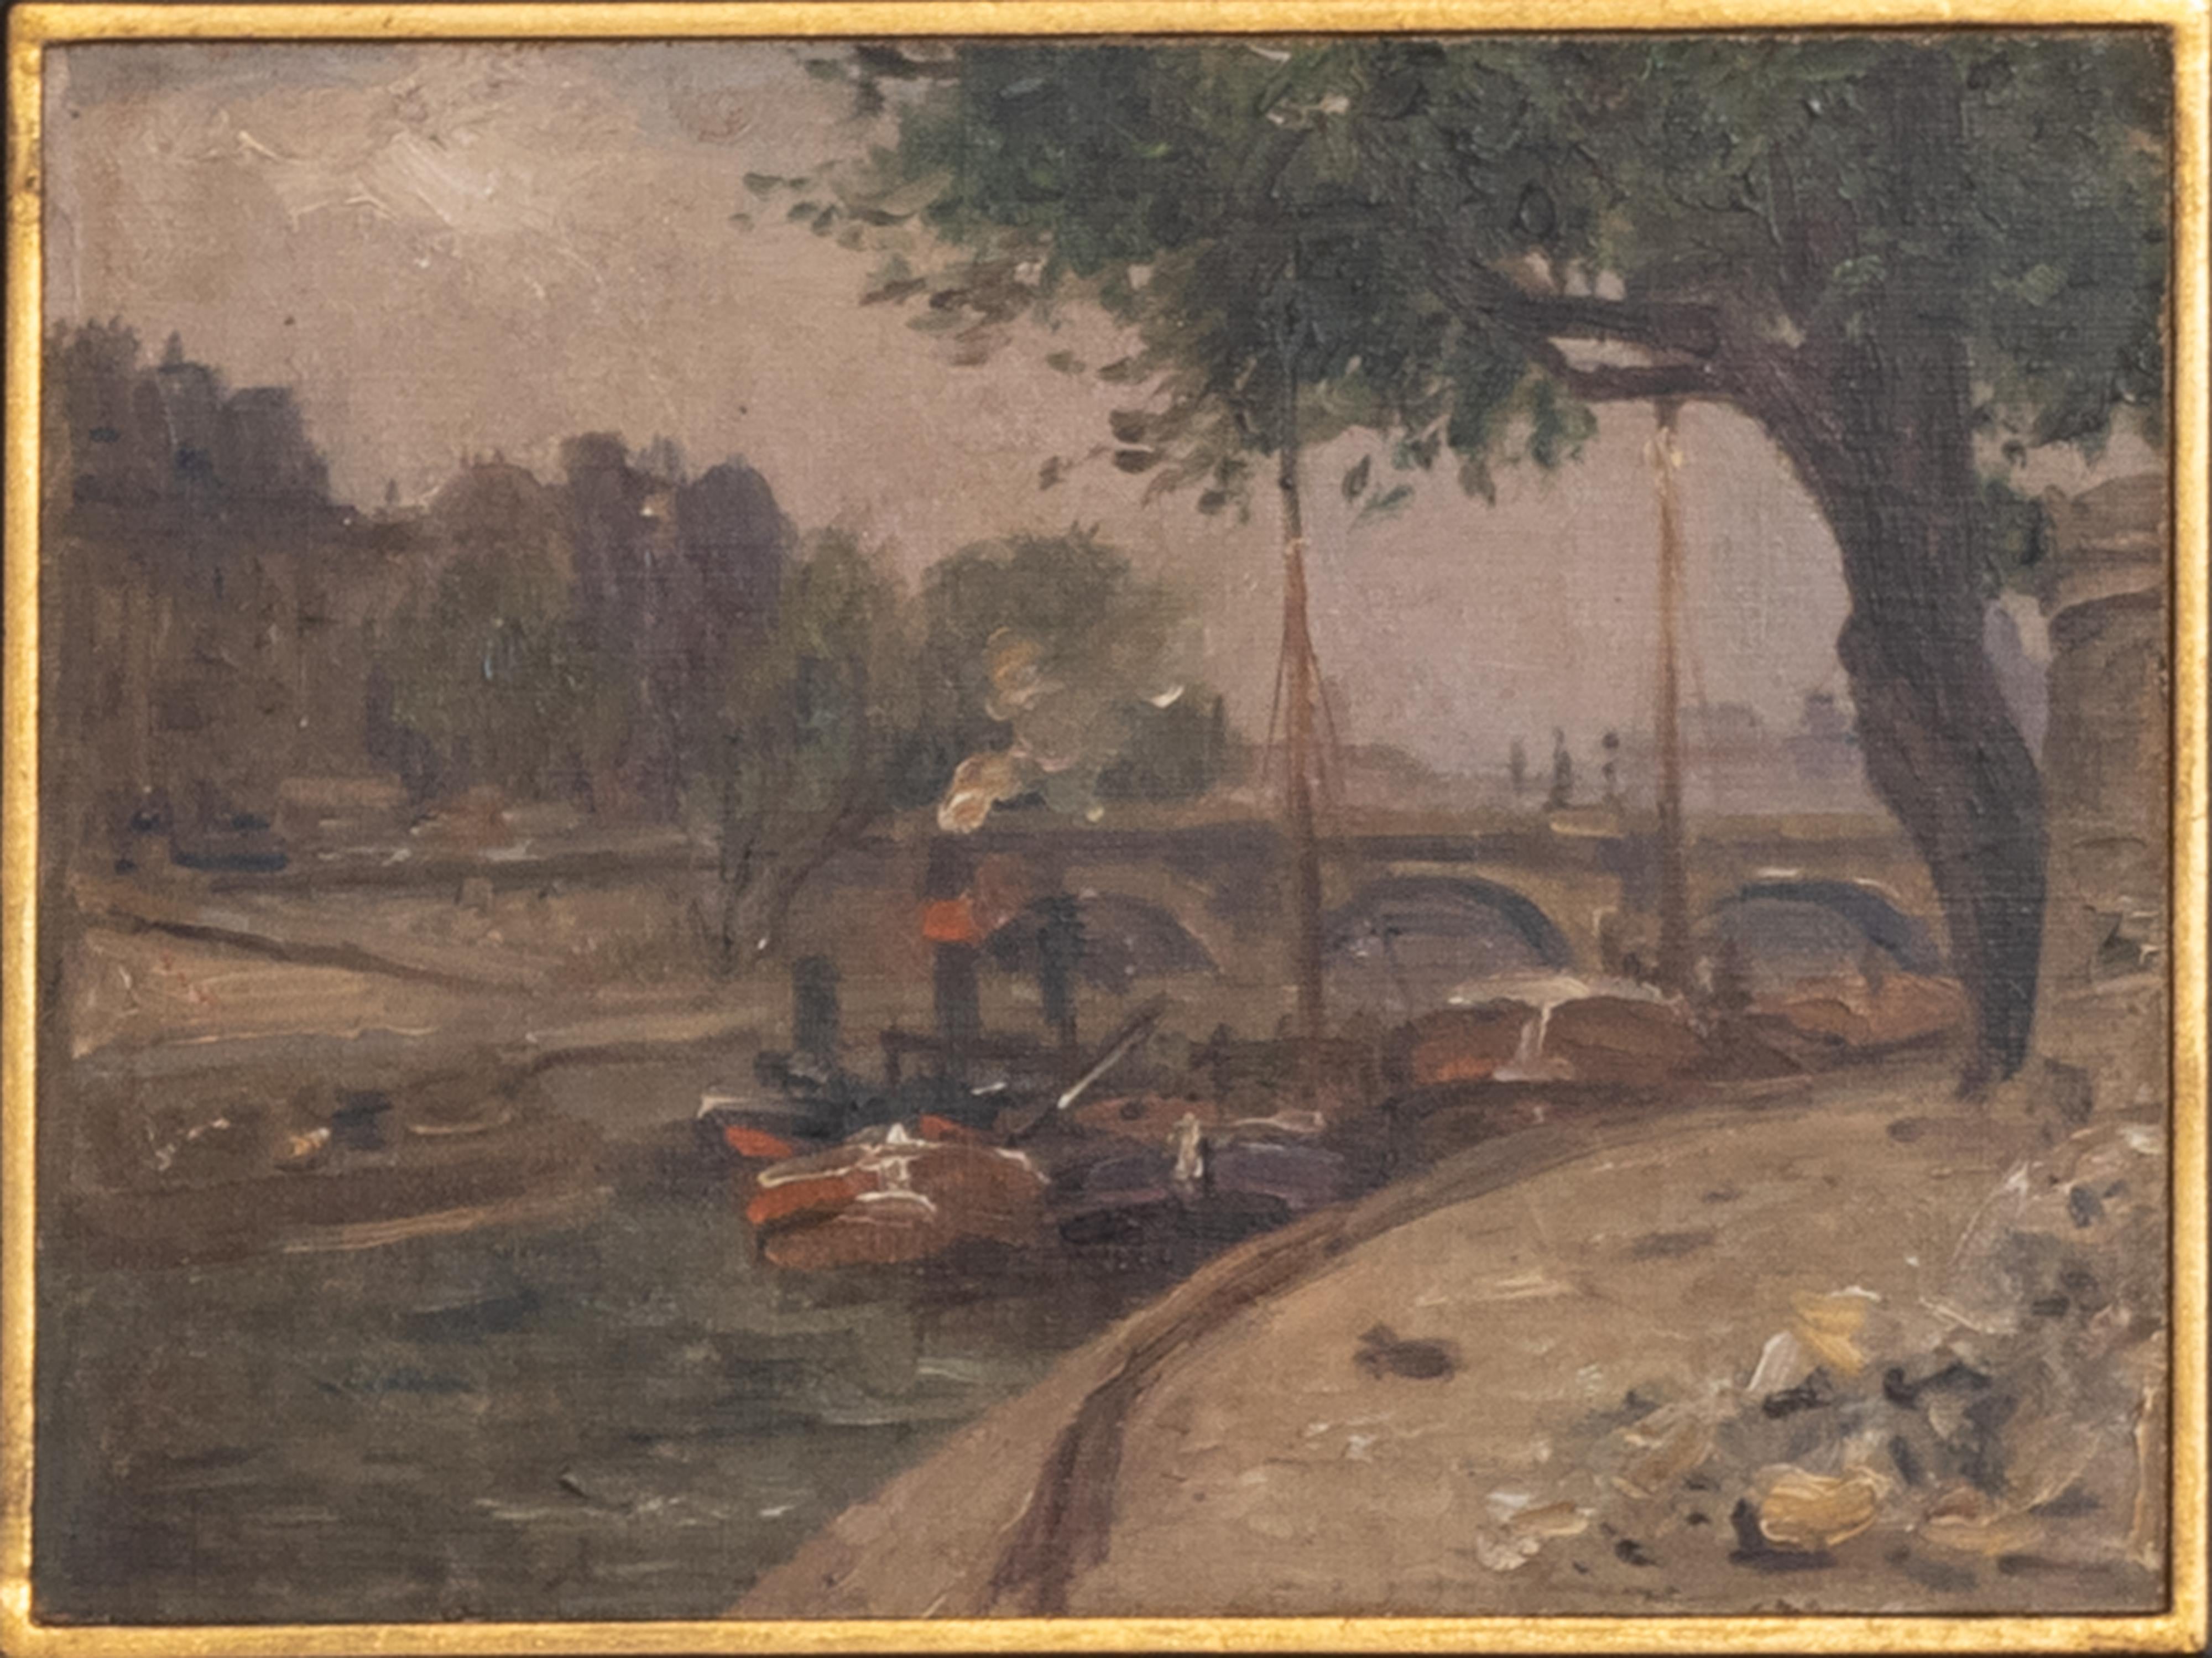 Ein postimpressionistisches Gemälde aus dem 20. Jahrhundert, das ein Frachtdampfschiff auf der Seine neben einem Pariser Flussufer zeigt. Ein französisches Gemälde aus dem goldenen Zeitalter von Paris, der Hauptstadt der Kunst und Kultur.  Öl auf